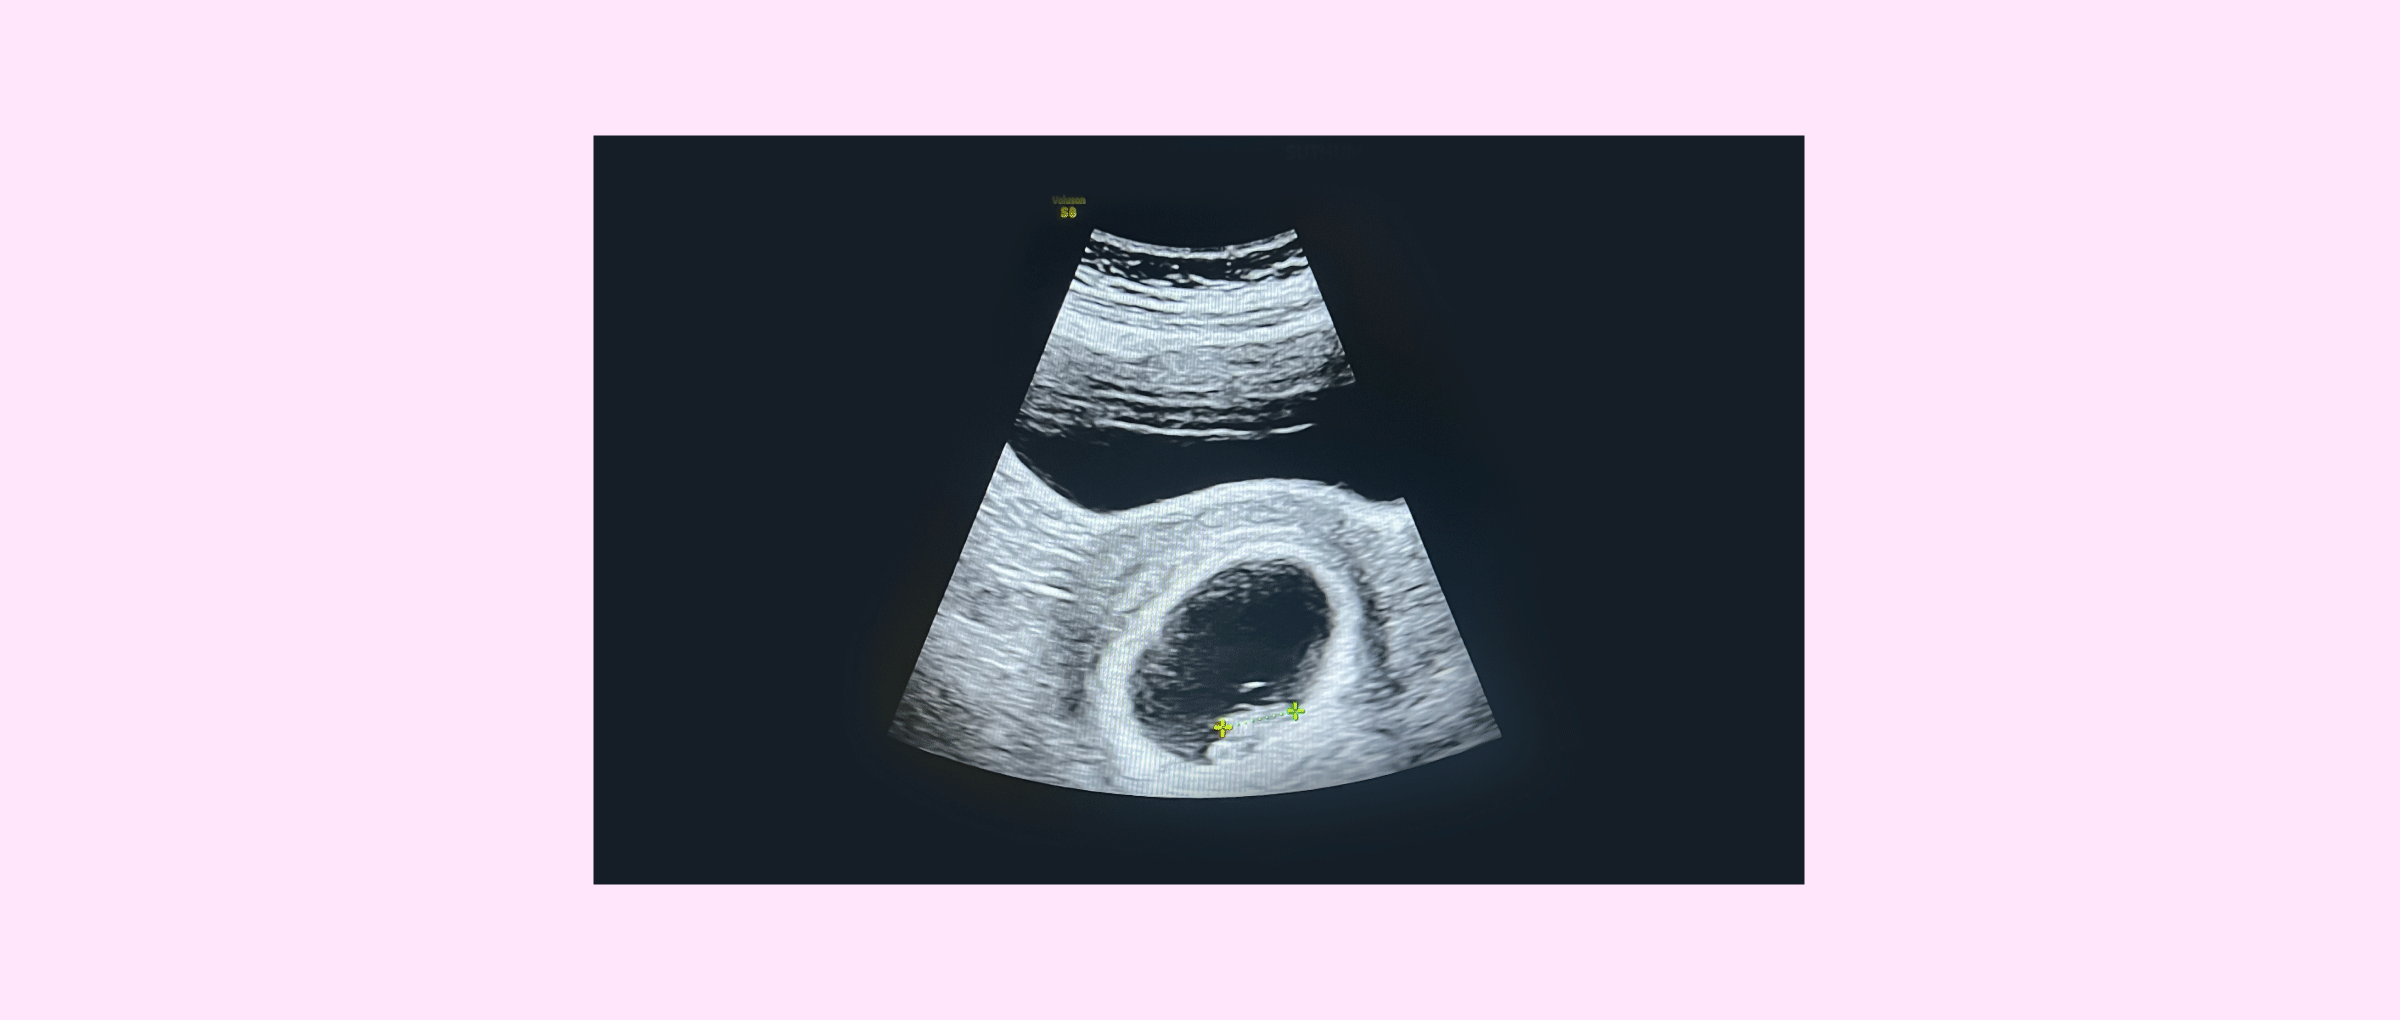 First gestational 2D ultrasound